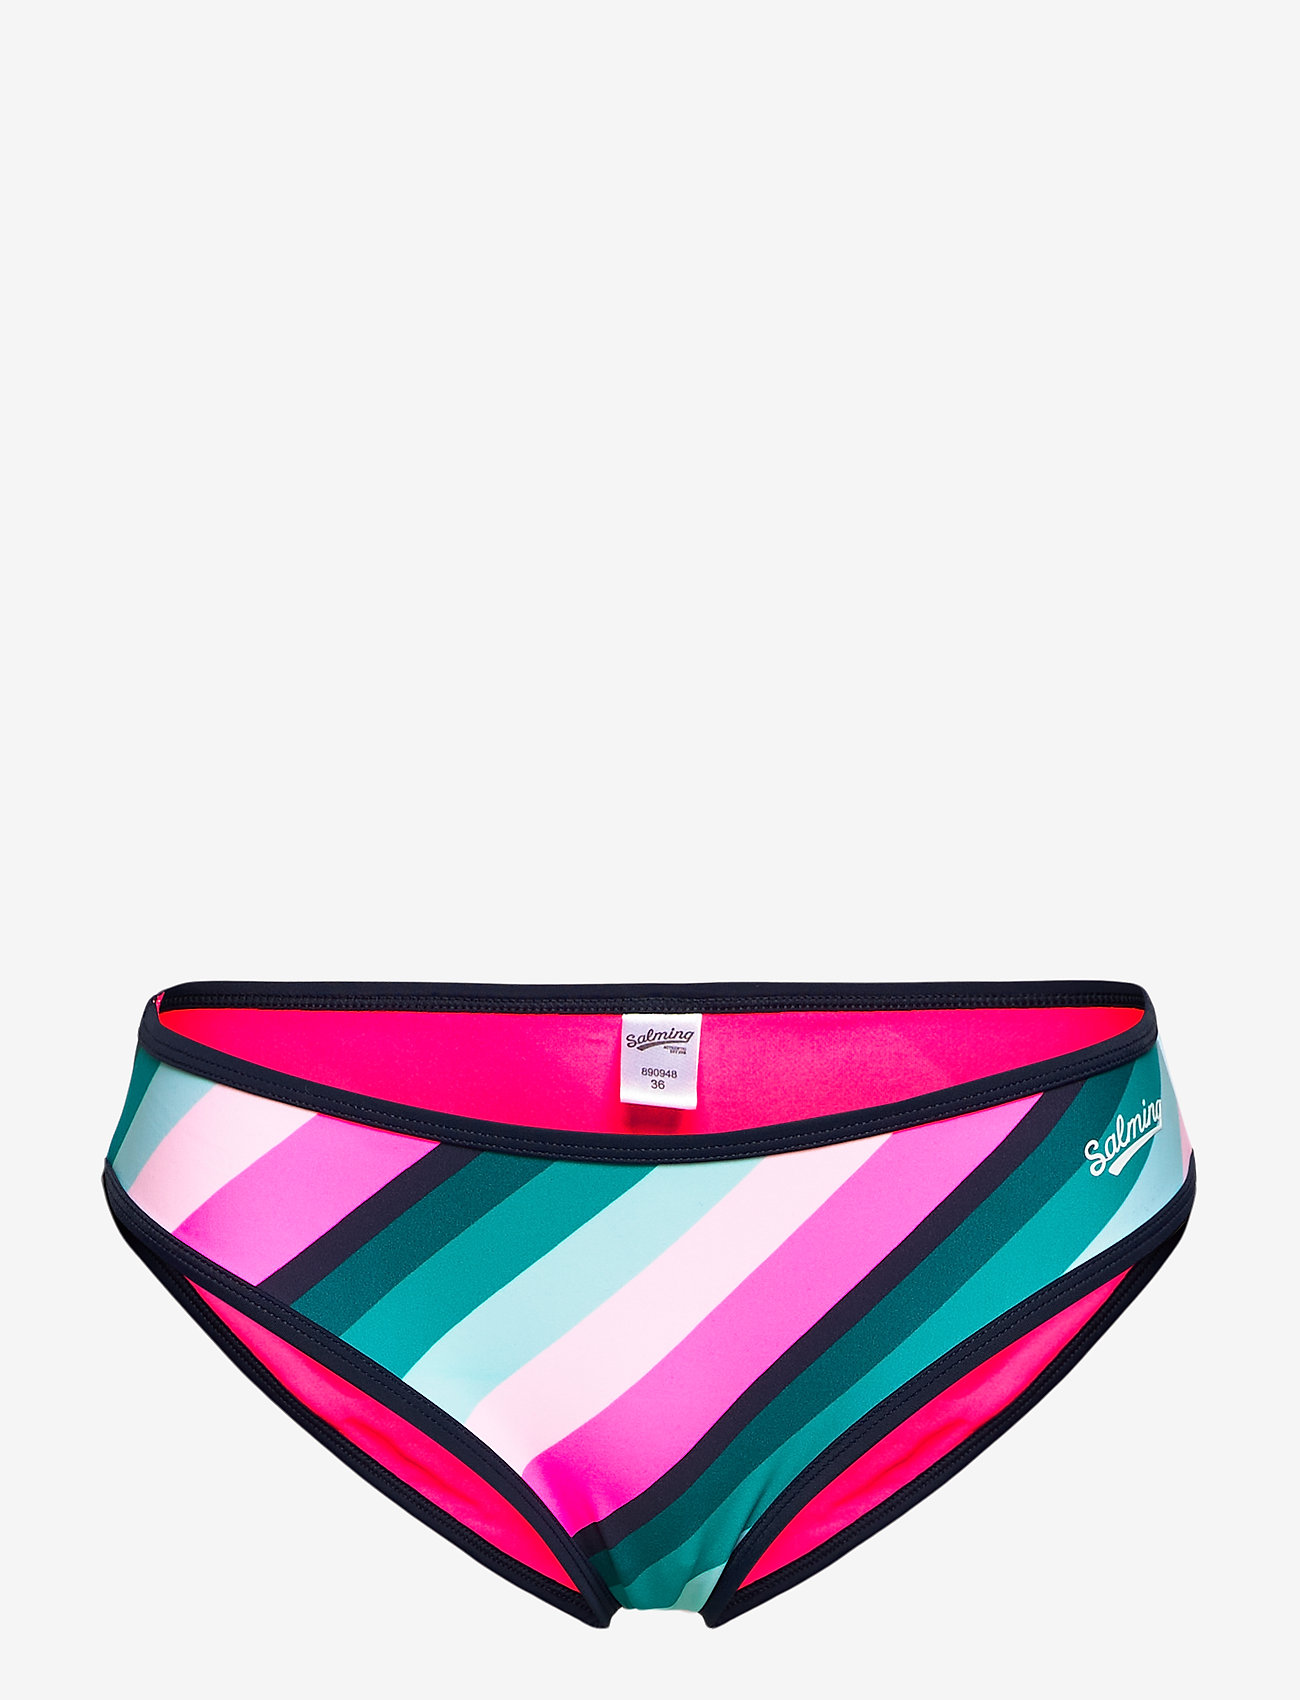 Salming - Rainbow brief - bikinibriefs - navy/pink - 0